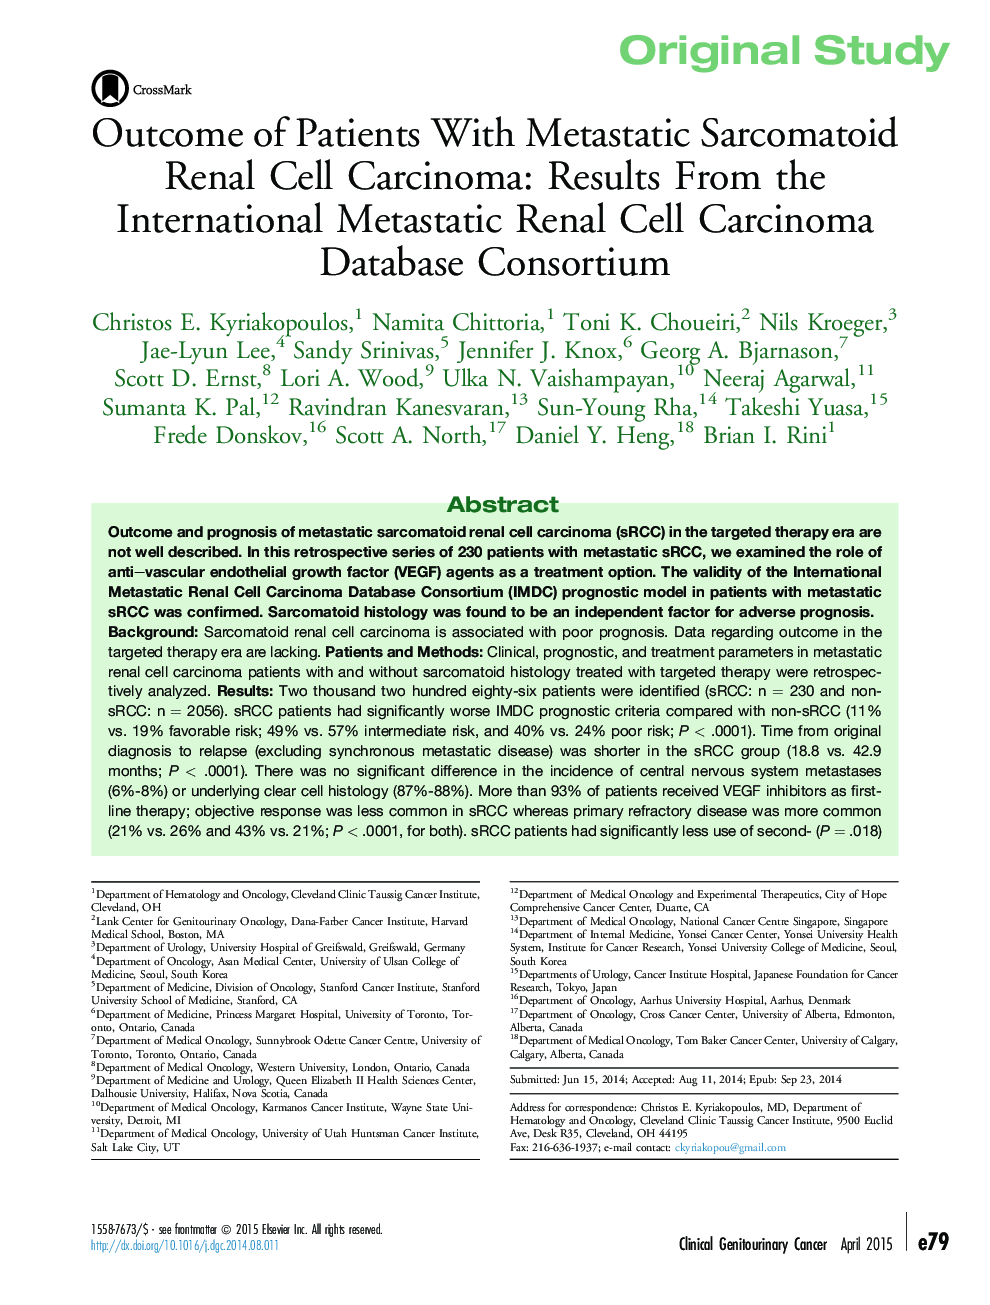 مطالعه اصلی در مورد بیماران مبتلا به سل کارسینوم سلول های سرطانی متاستاتیک: نتایج از کنسرسیوم پایگاه داده بین المللی متاستاتیک سلول های سرطانی کلیه 